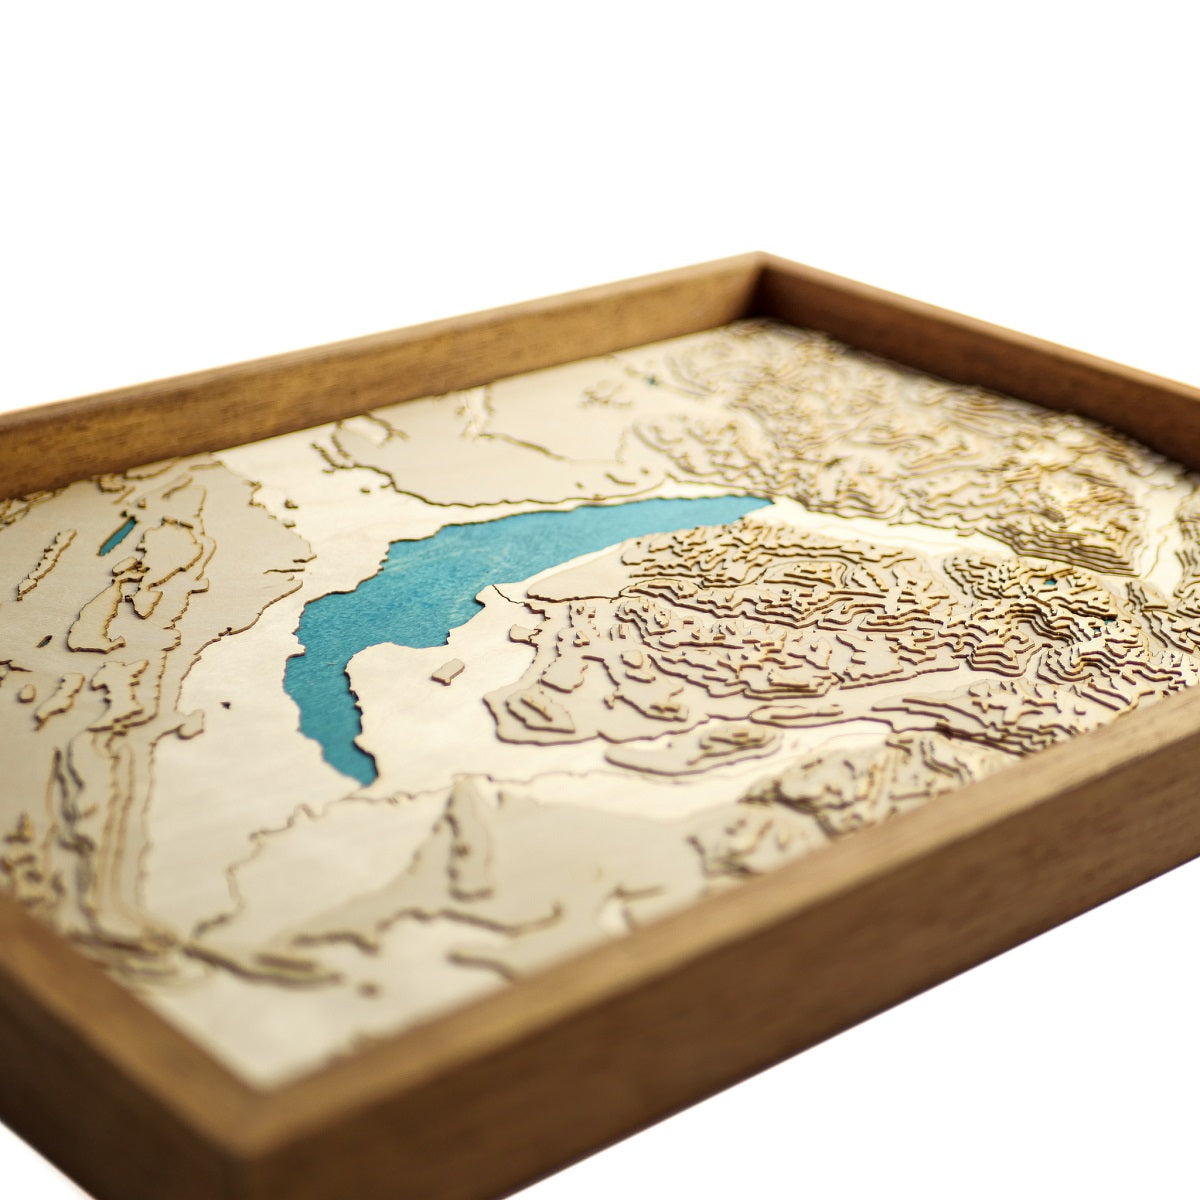 Détails du relief de la carte du lac Léman en bois